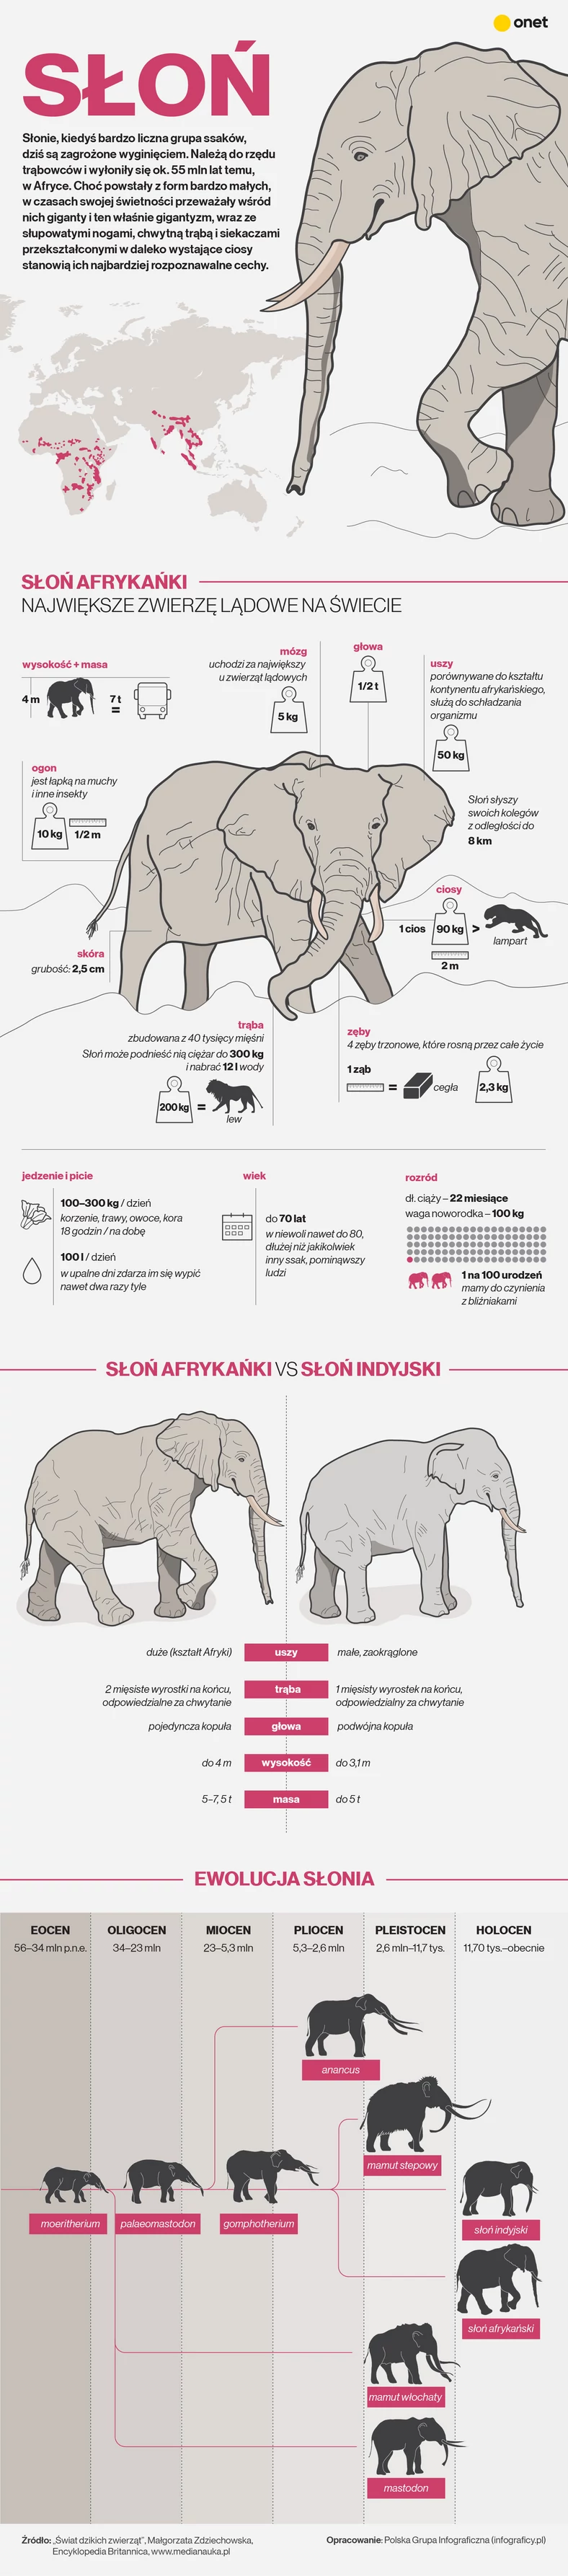 Słoń, czyli największe współcześnie żyjące zwierzę lądowe